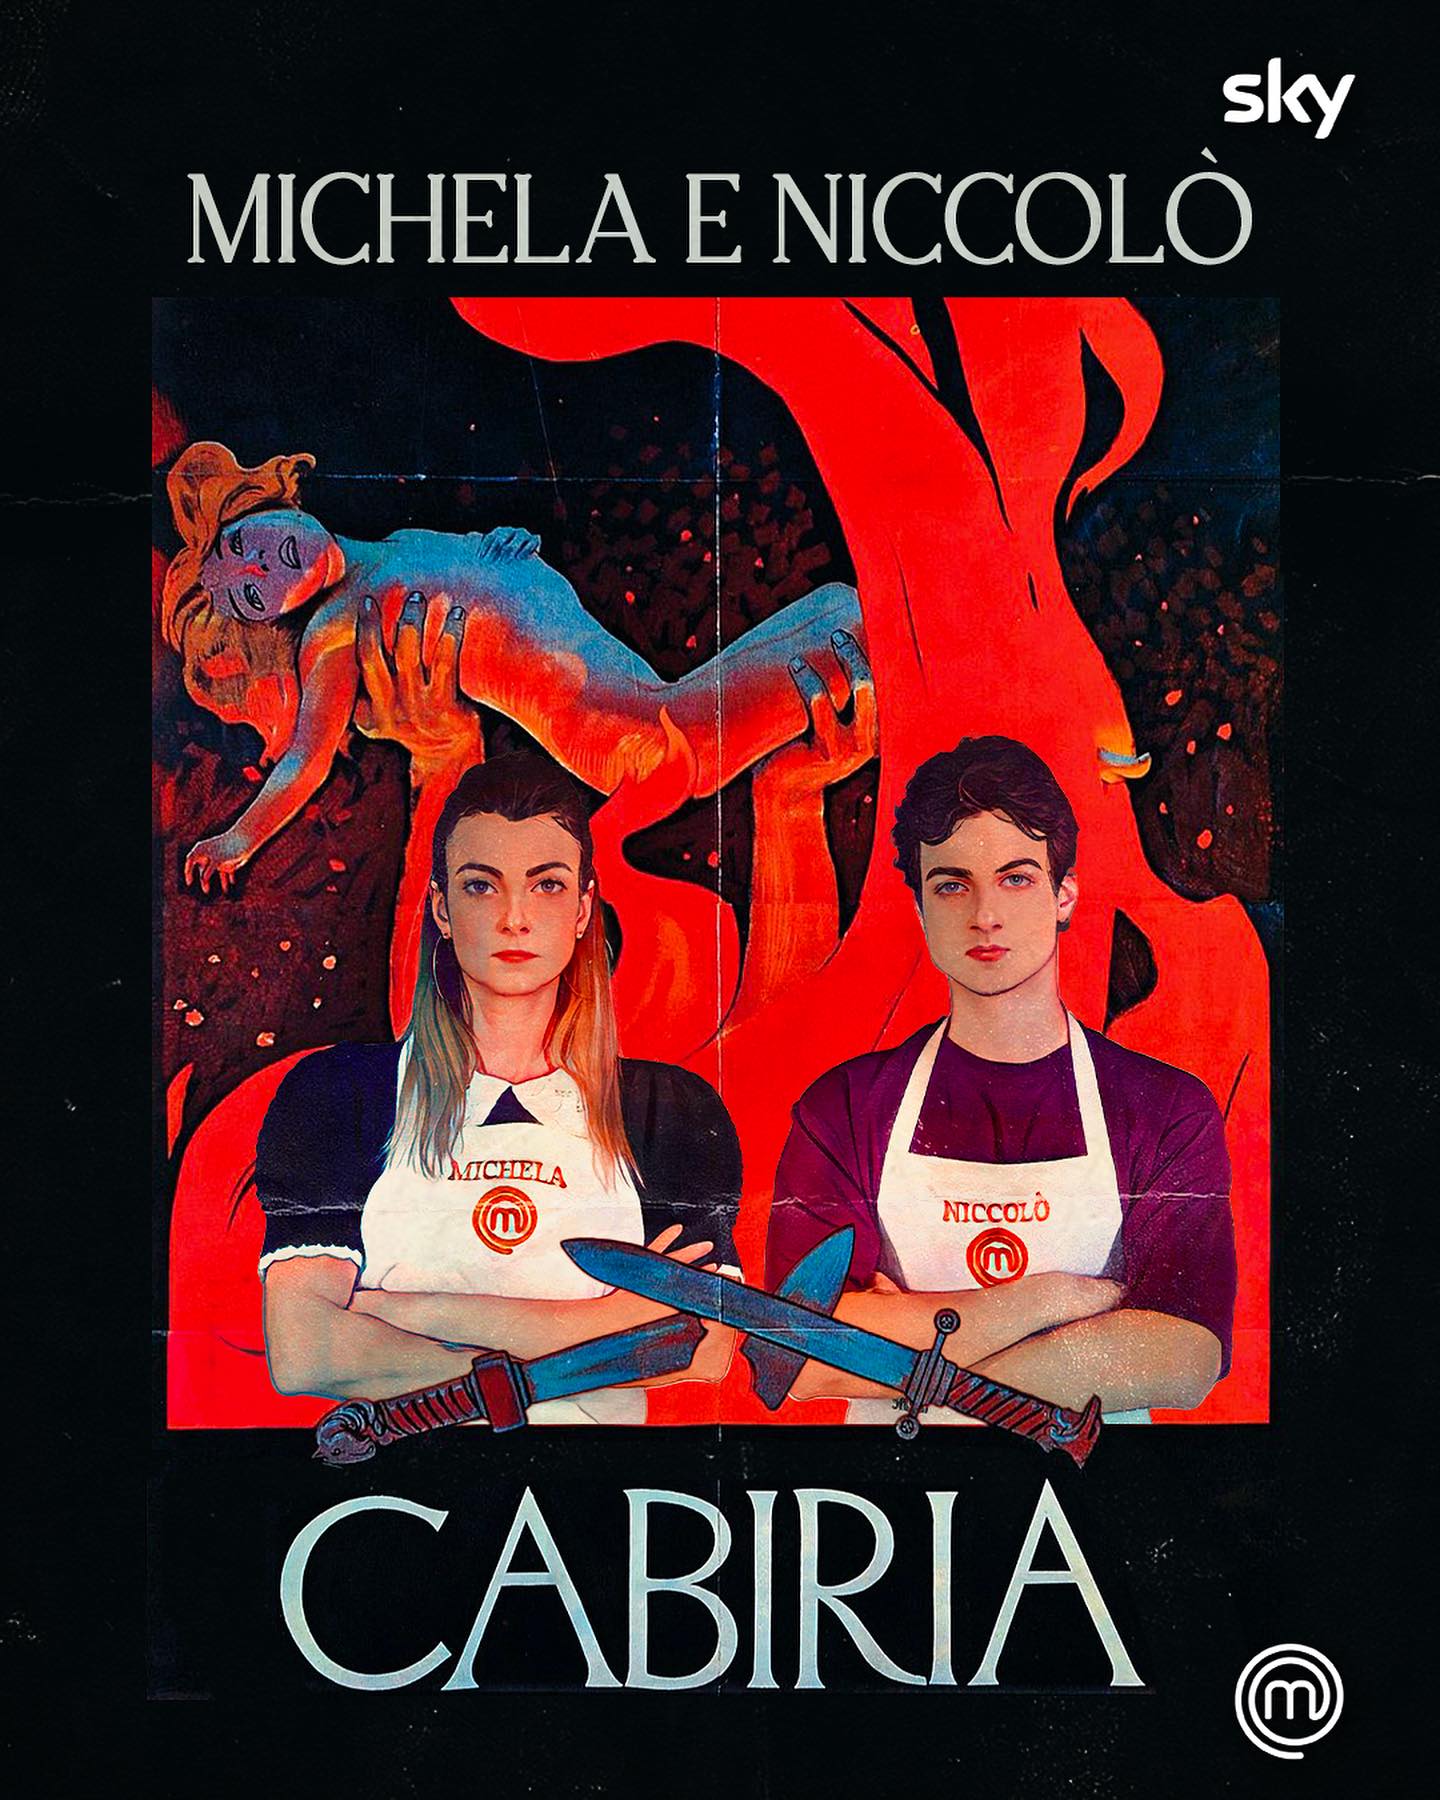 L'artwork dedicato a Michela e Niccolò